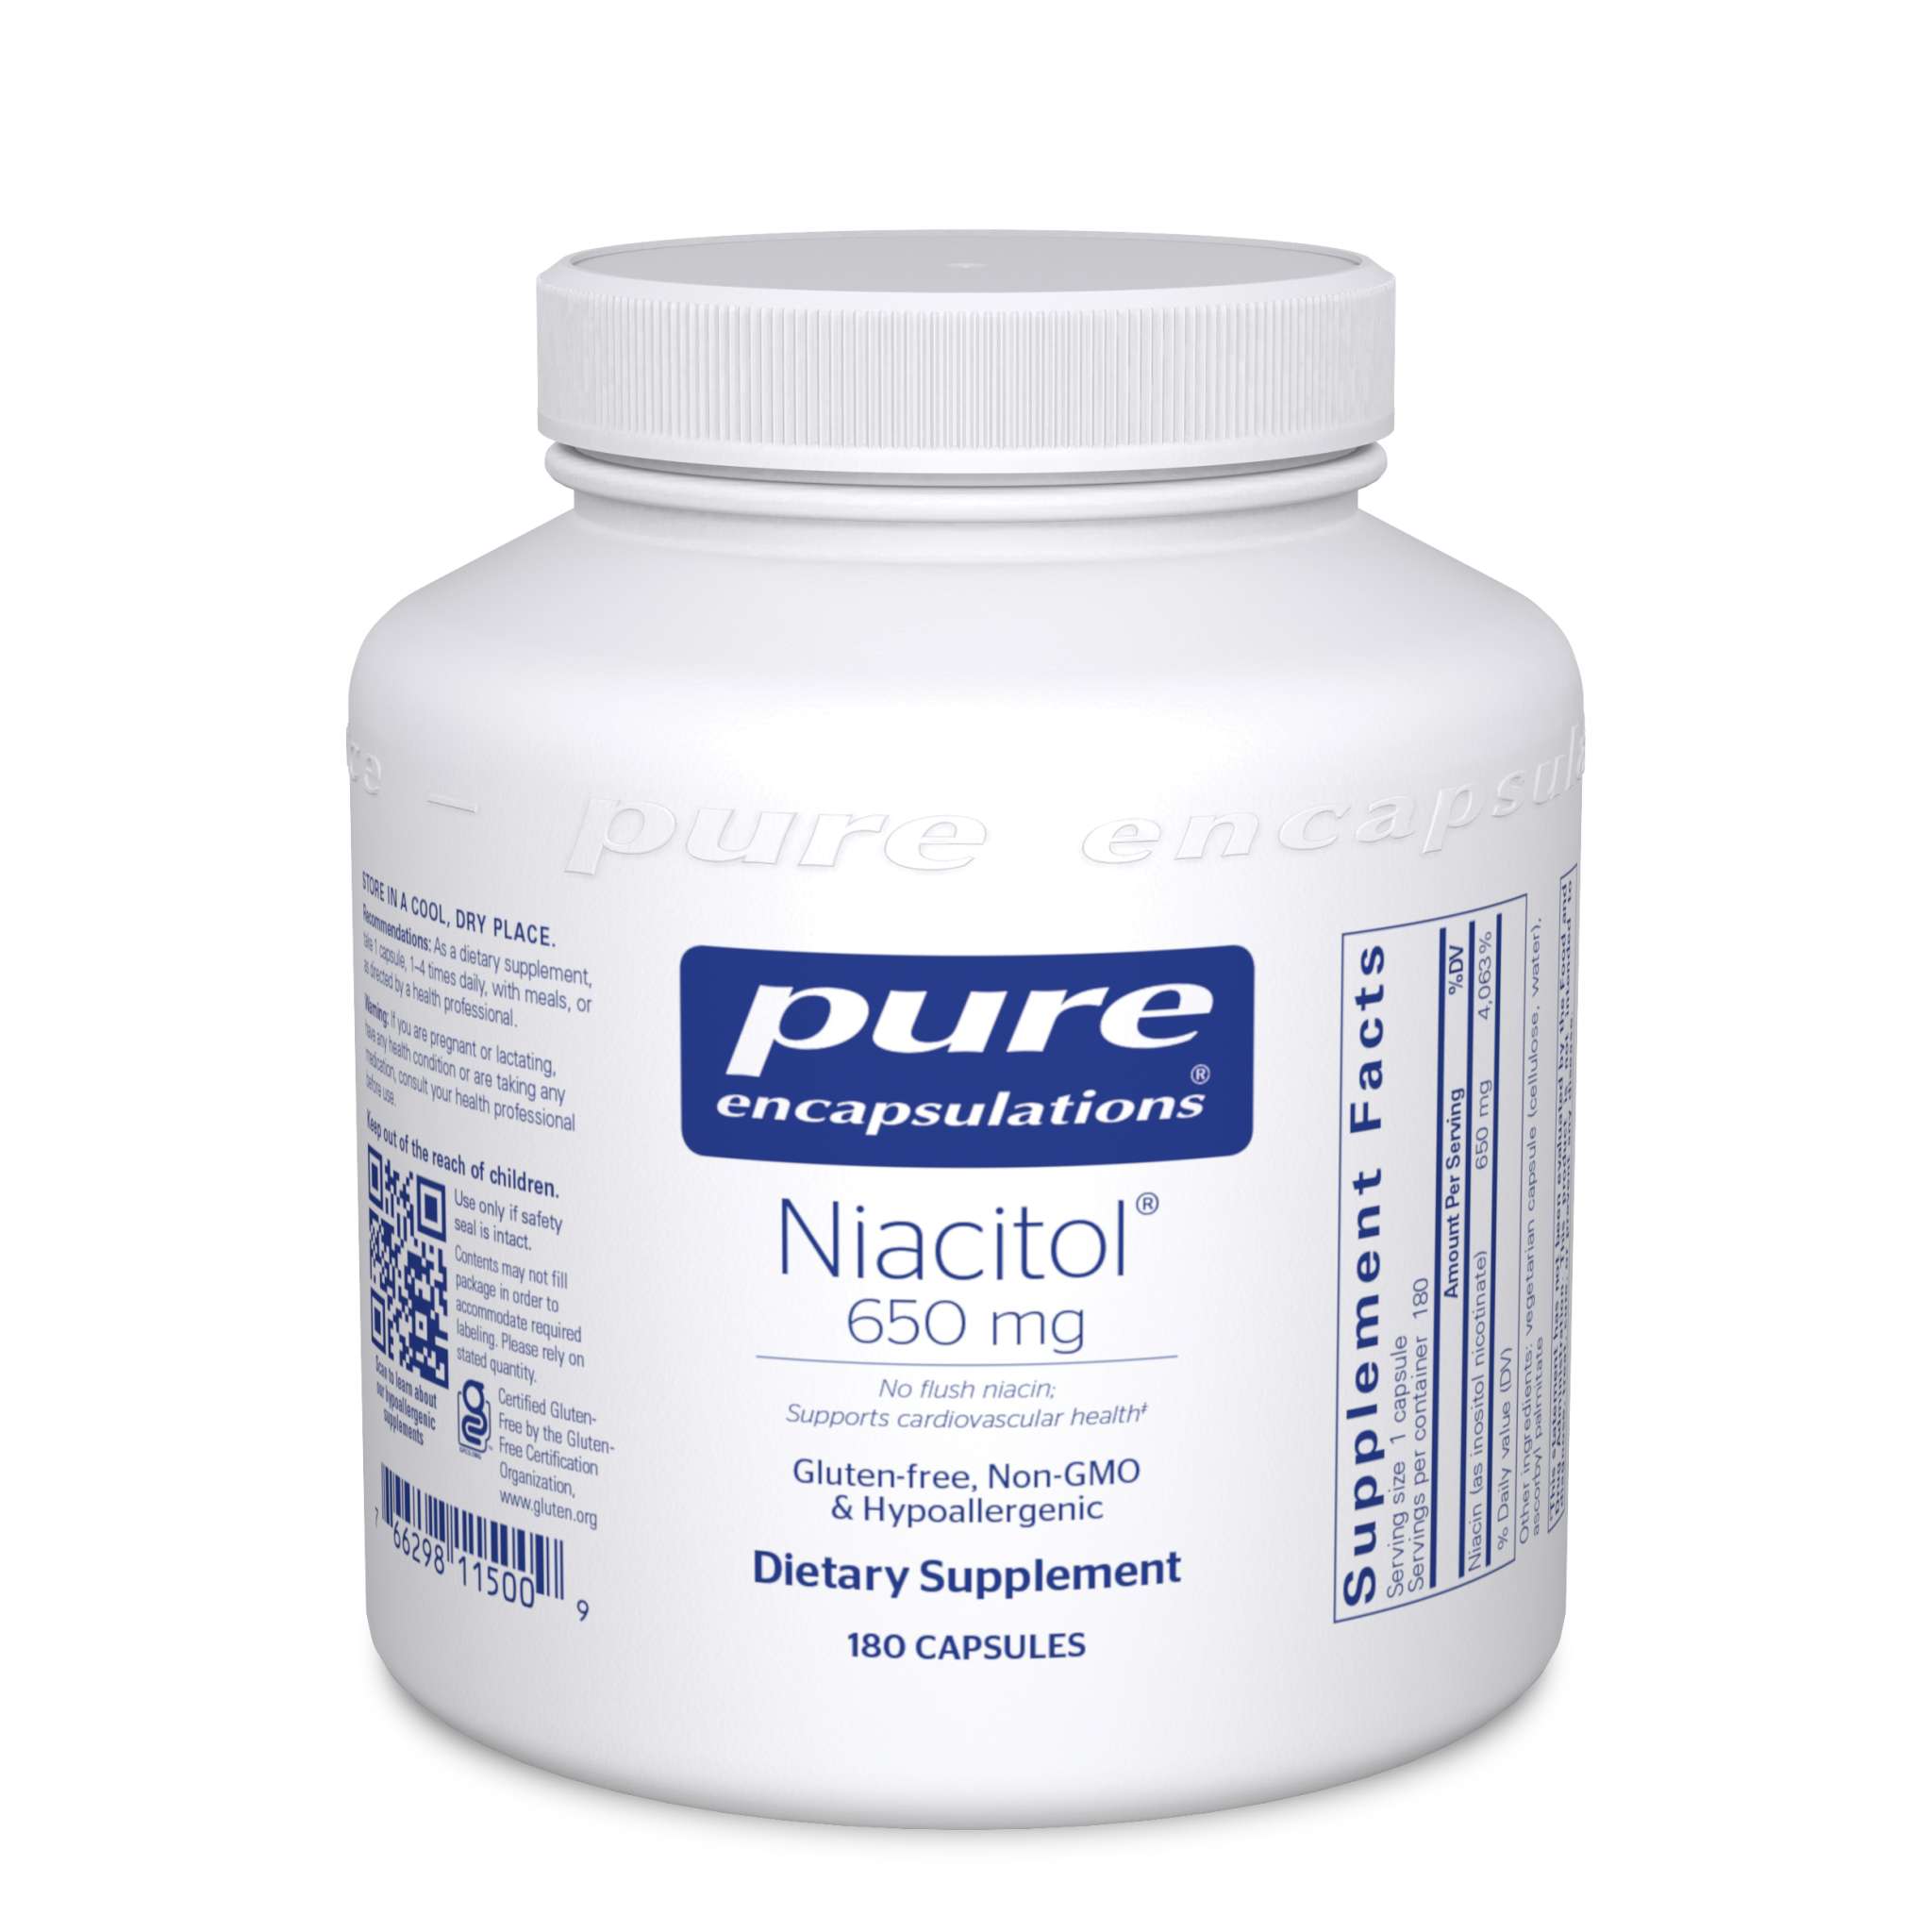 Pure Encapsulations - Niacitol 650 mg (No Flus Niac)